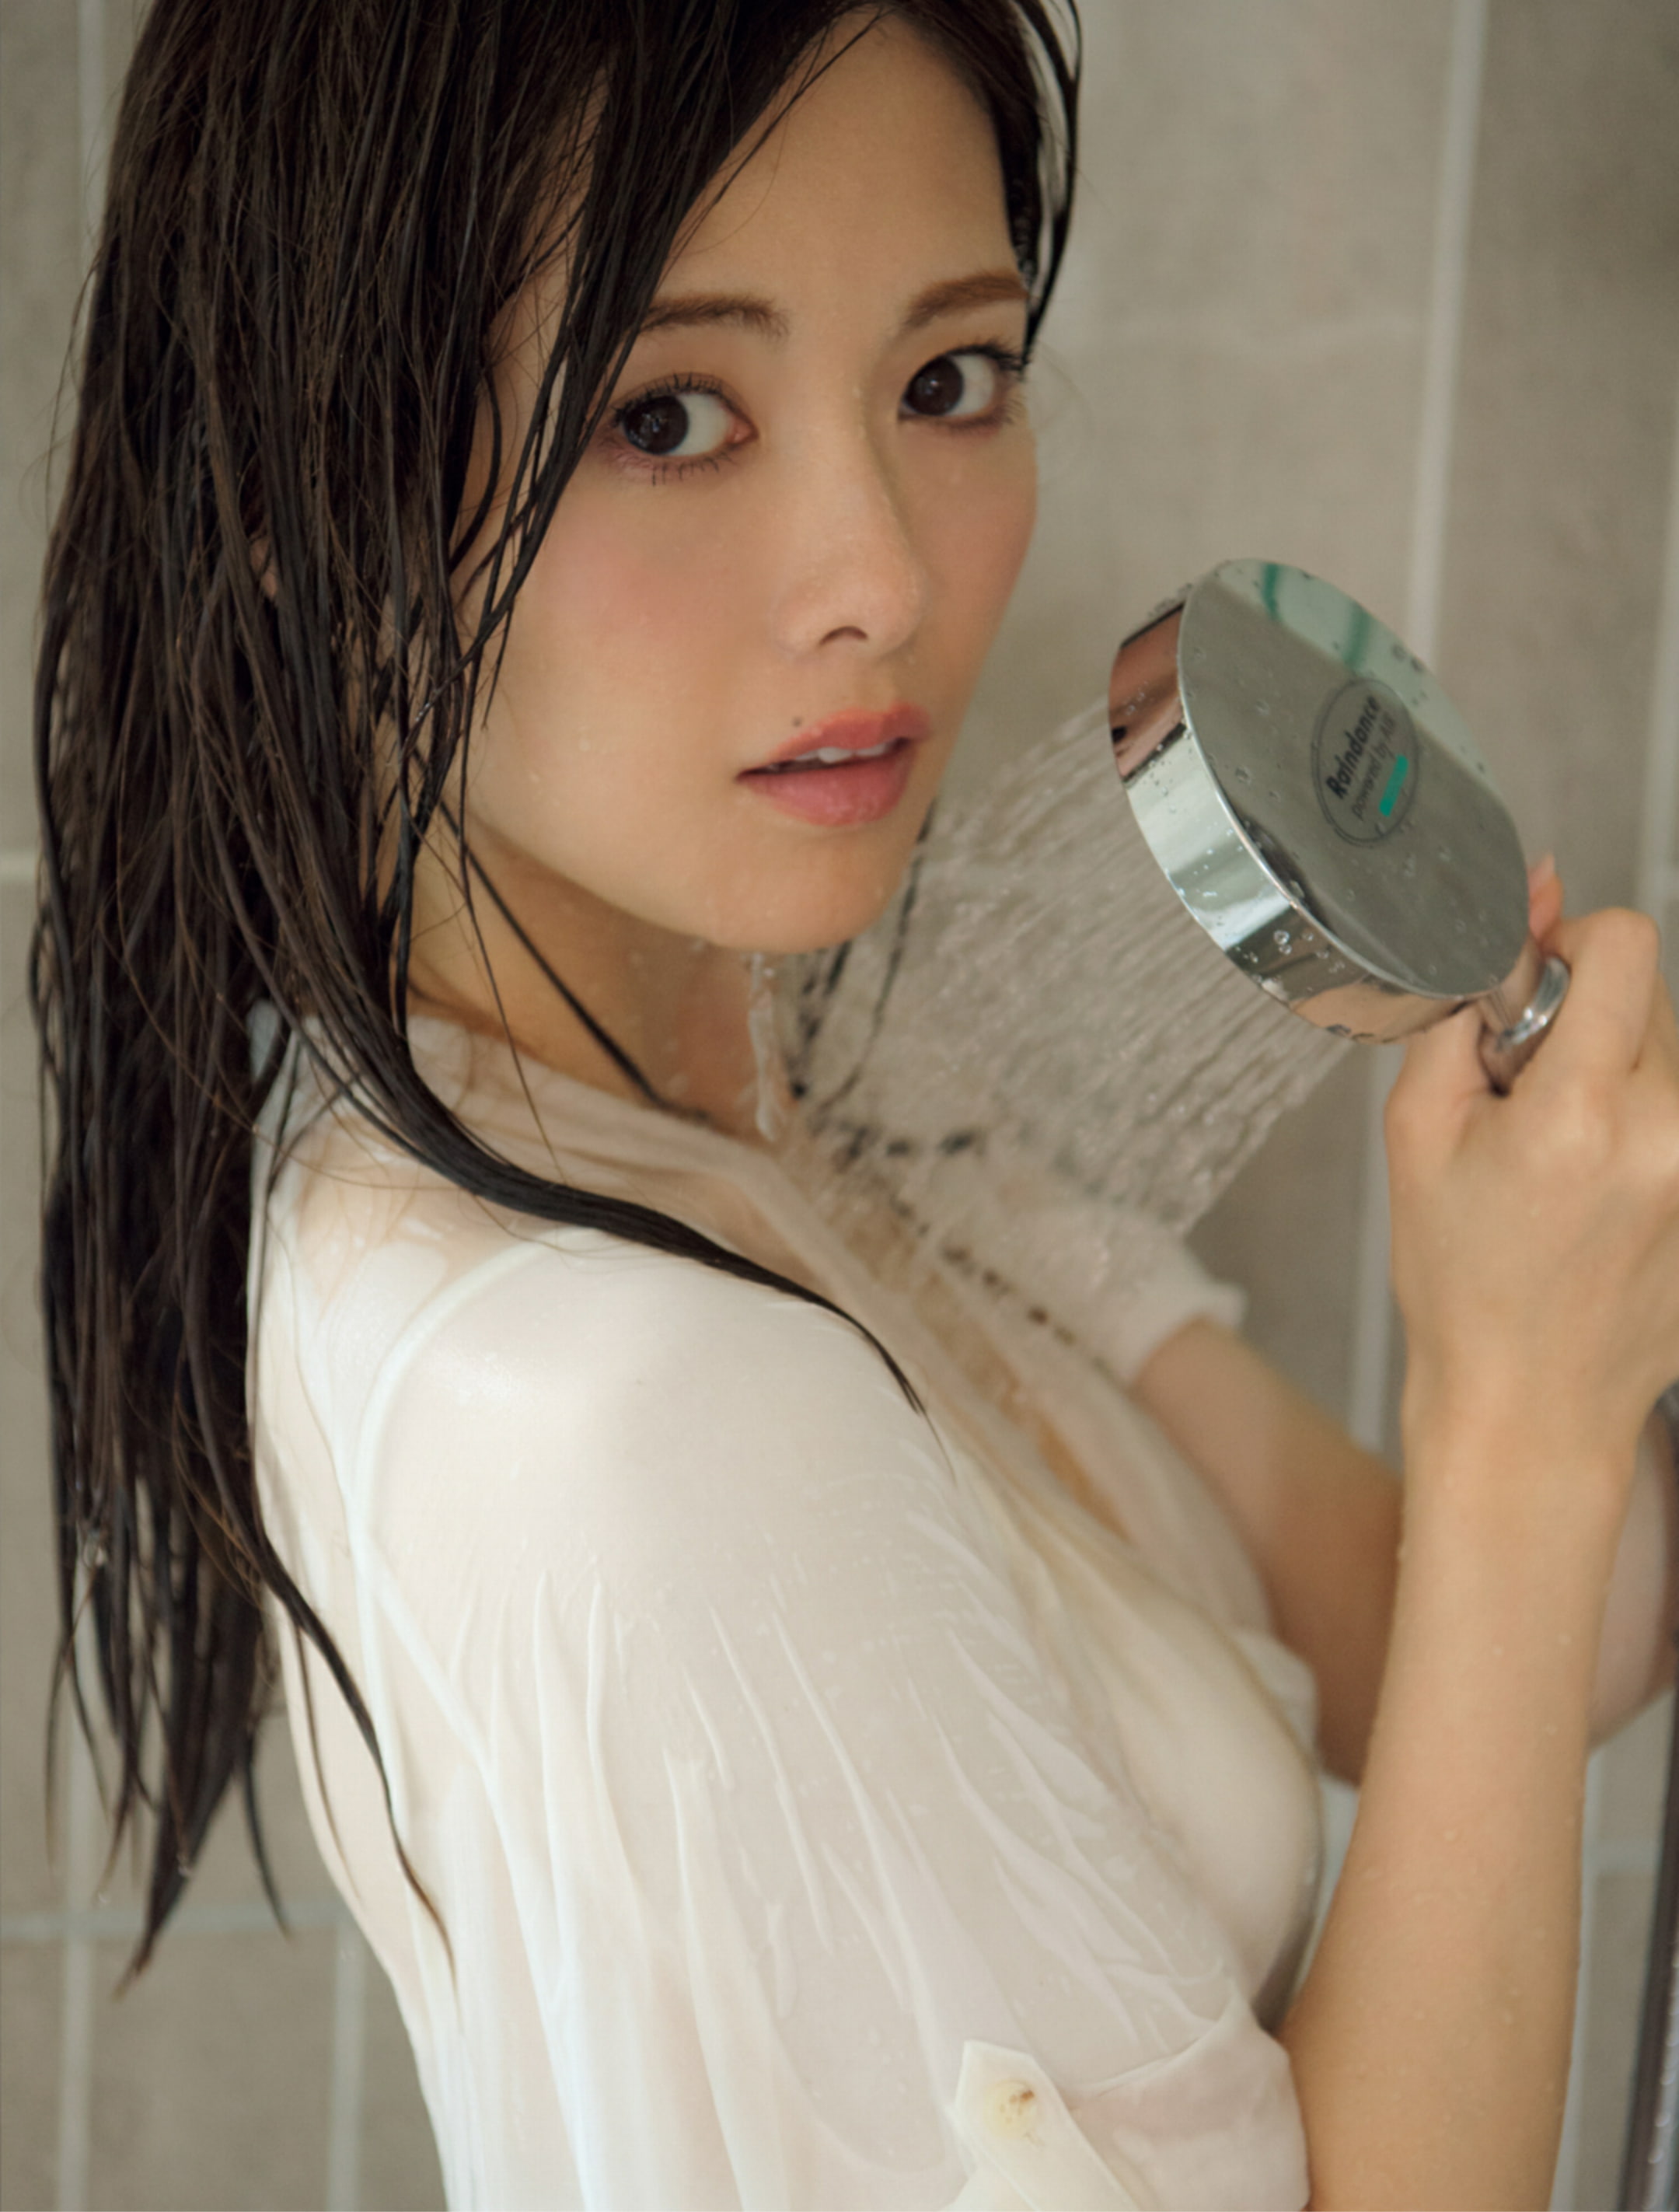 Mai Shiraishi, women, Asian, model, one person, holding, portrait